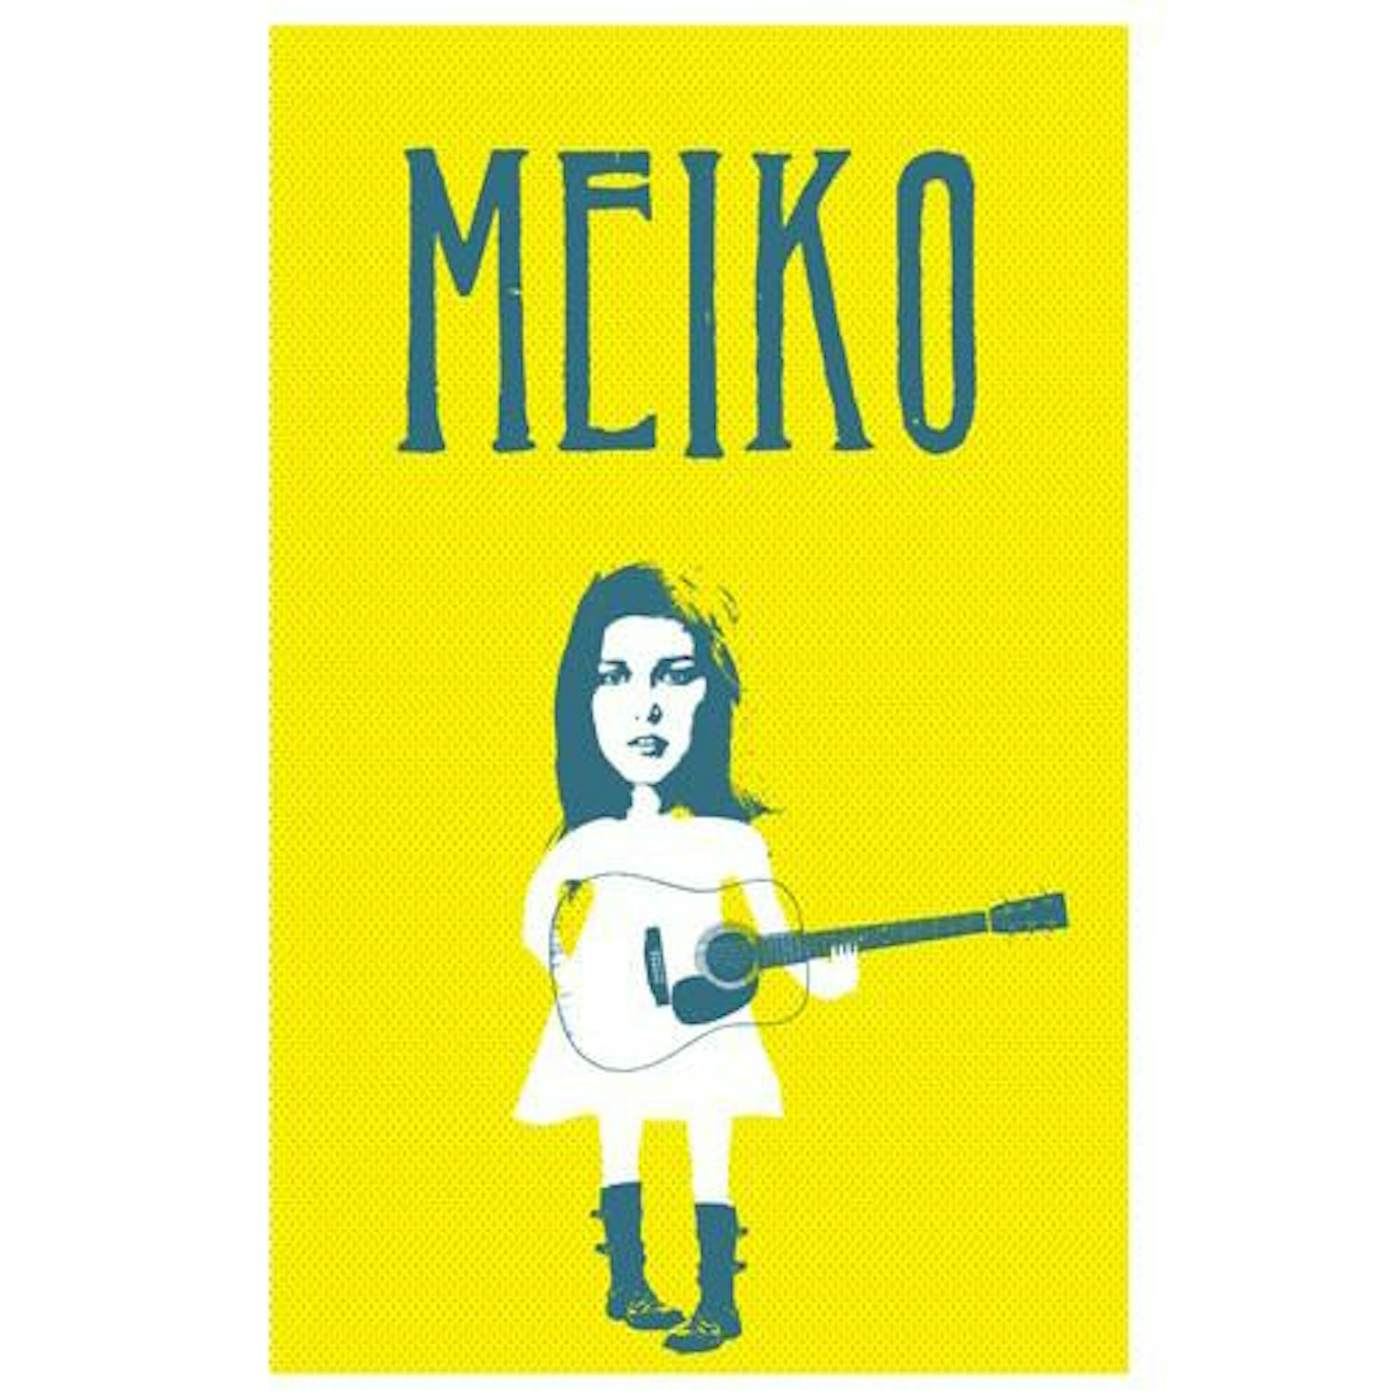 Meiko - Sticker